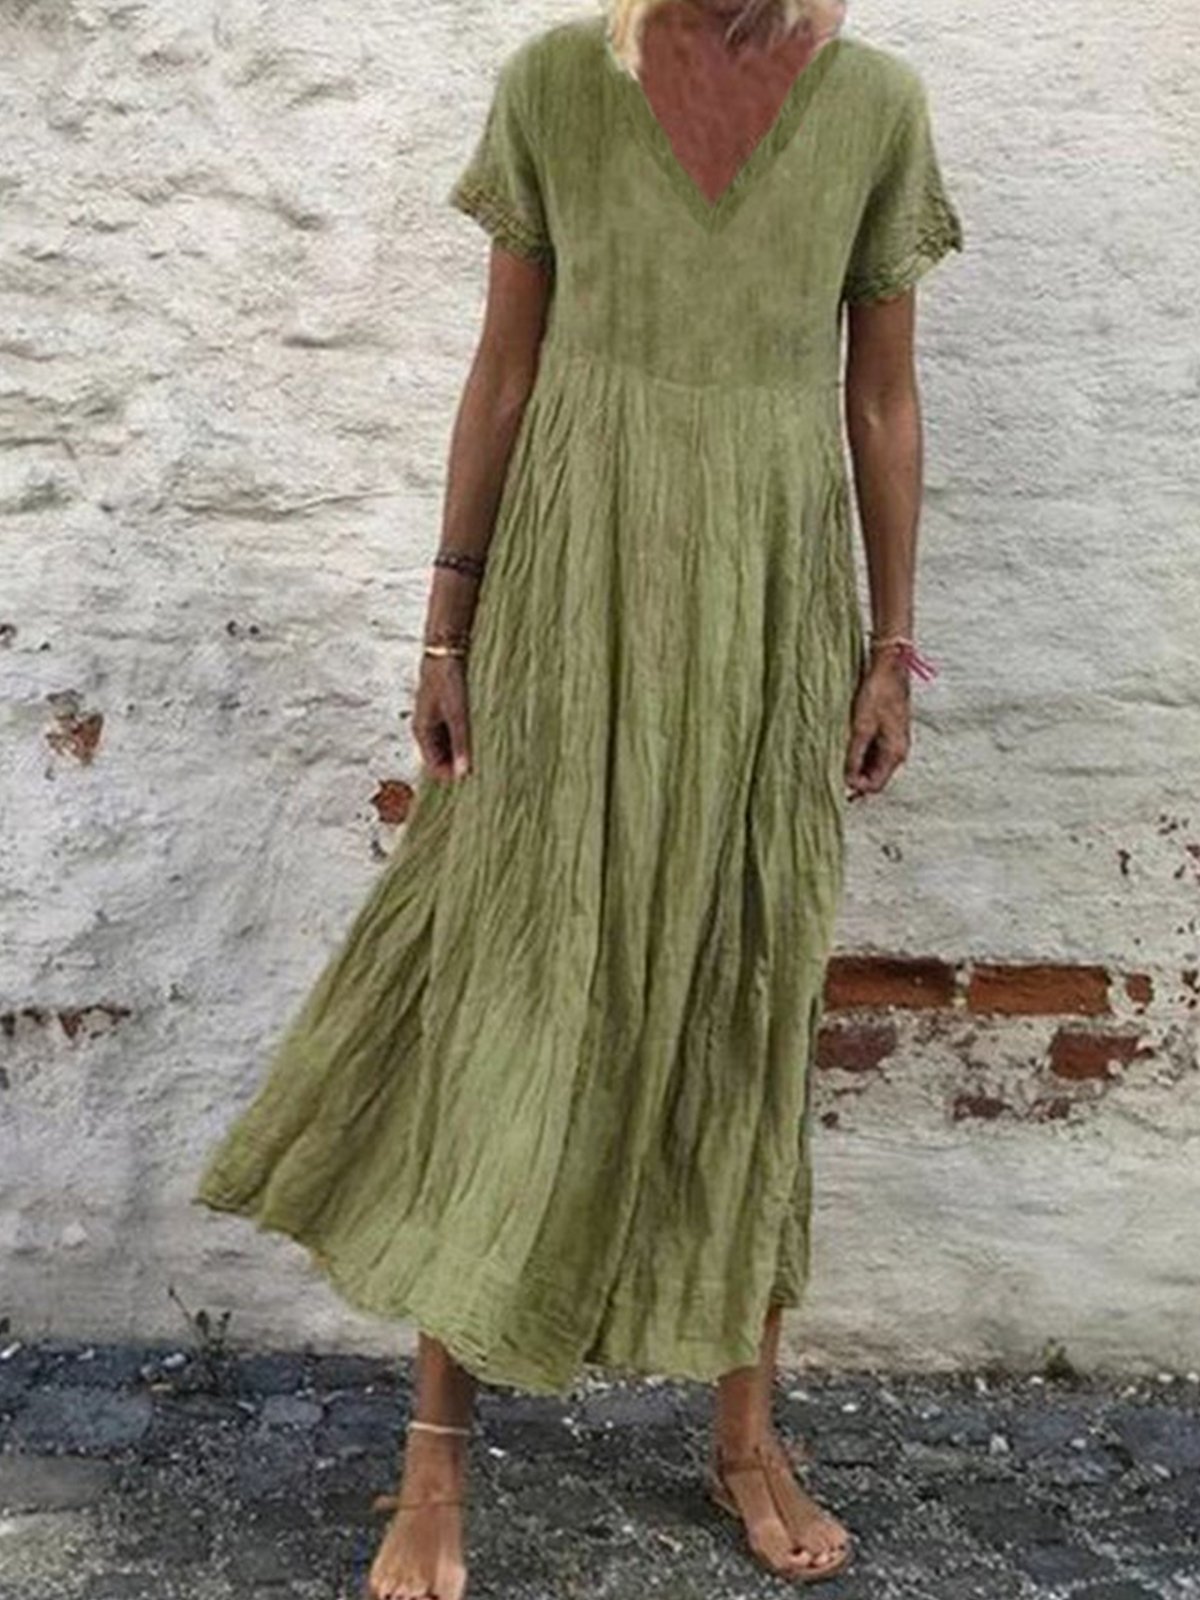 Casual Plain Fit Cotton-Blend Linen Dress